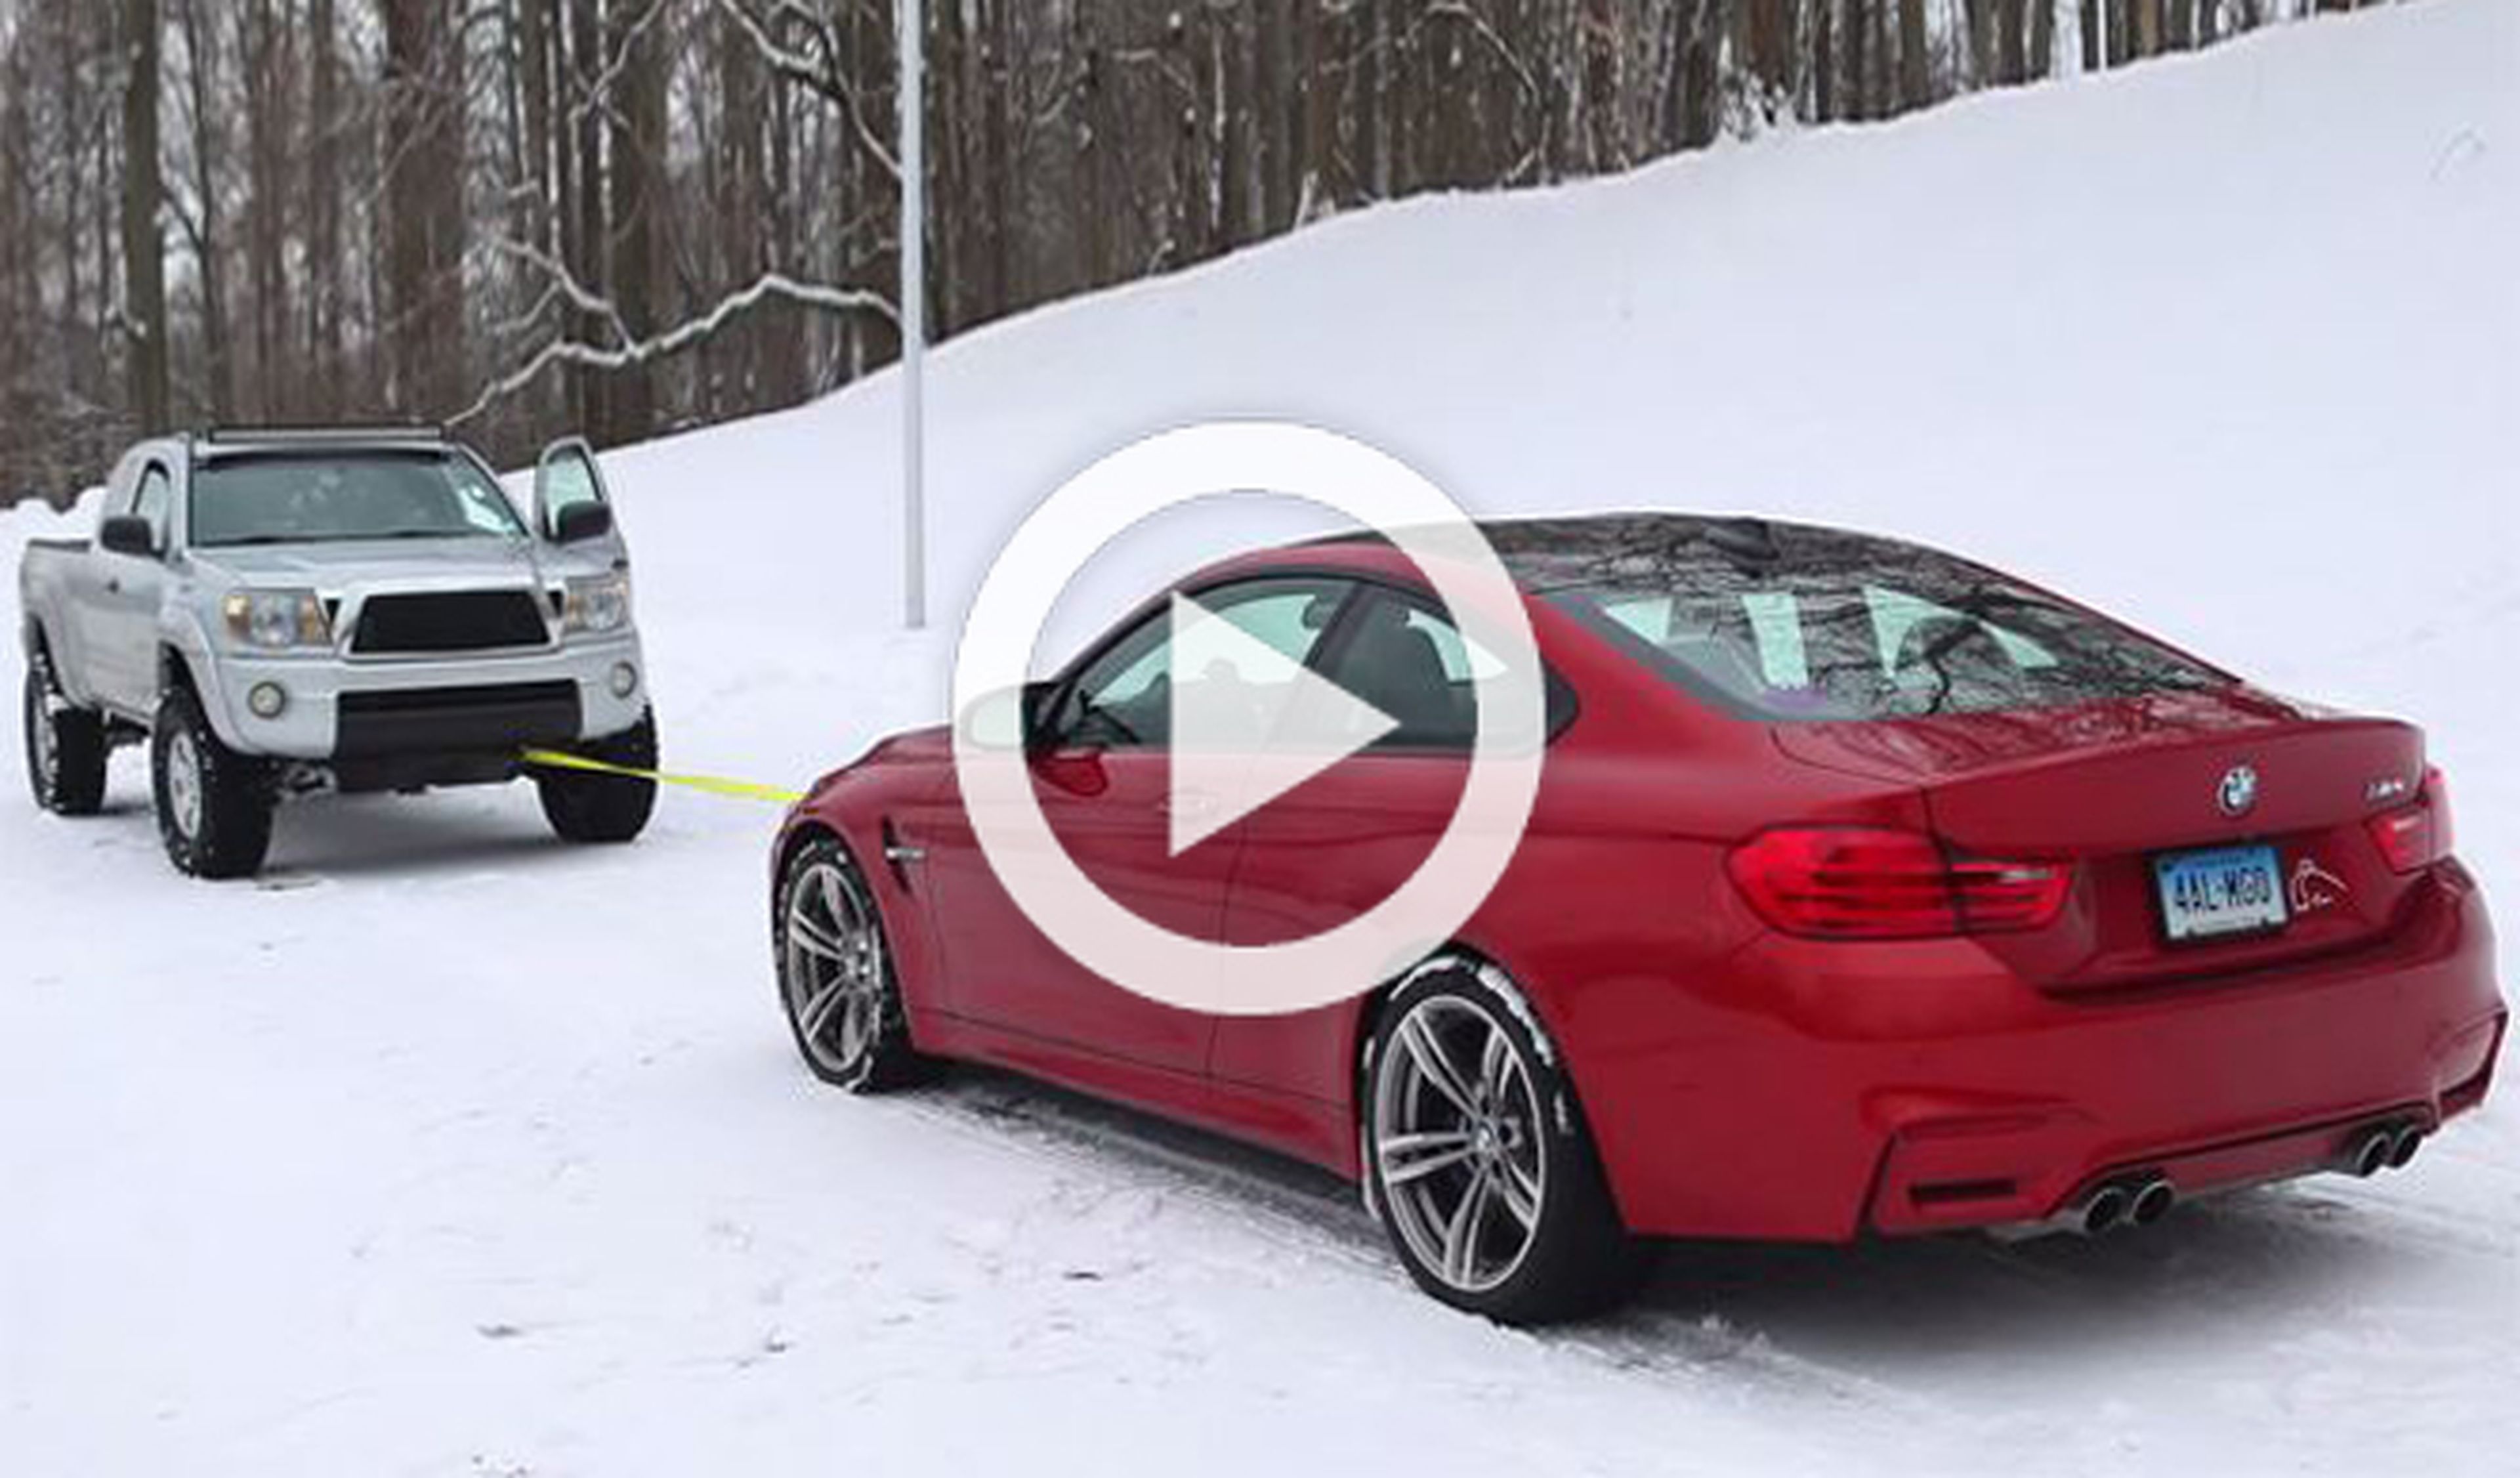 Vídeo: un BMW M4 Coupe contra un pick-up sobre la nieve